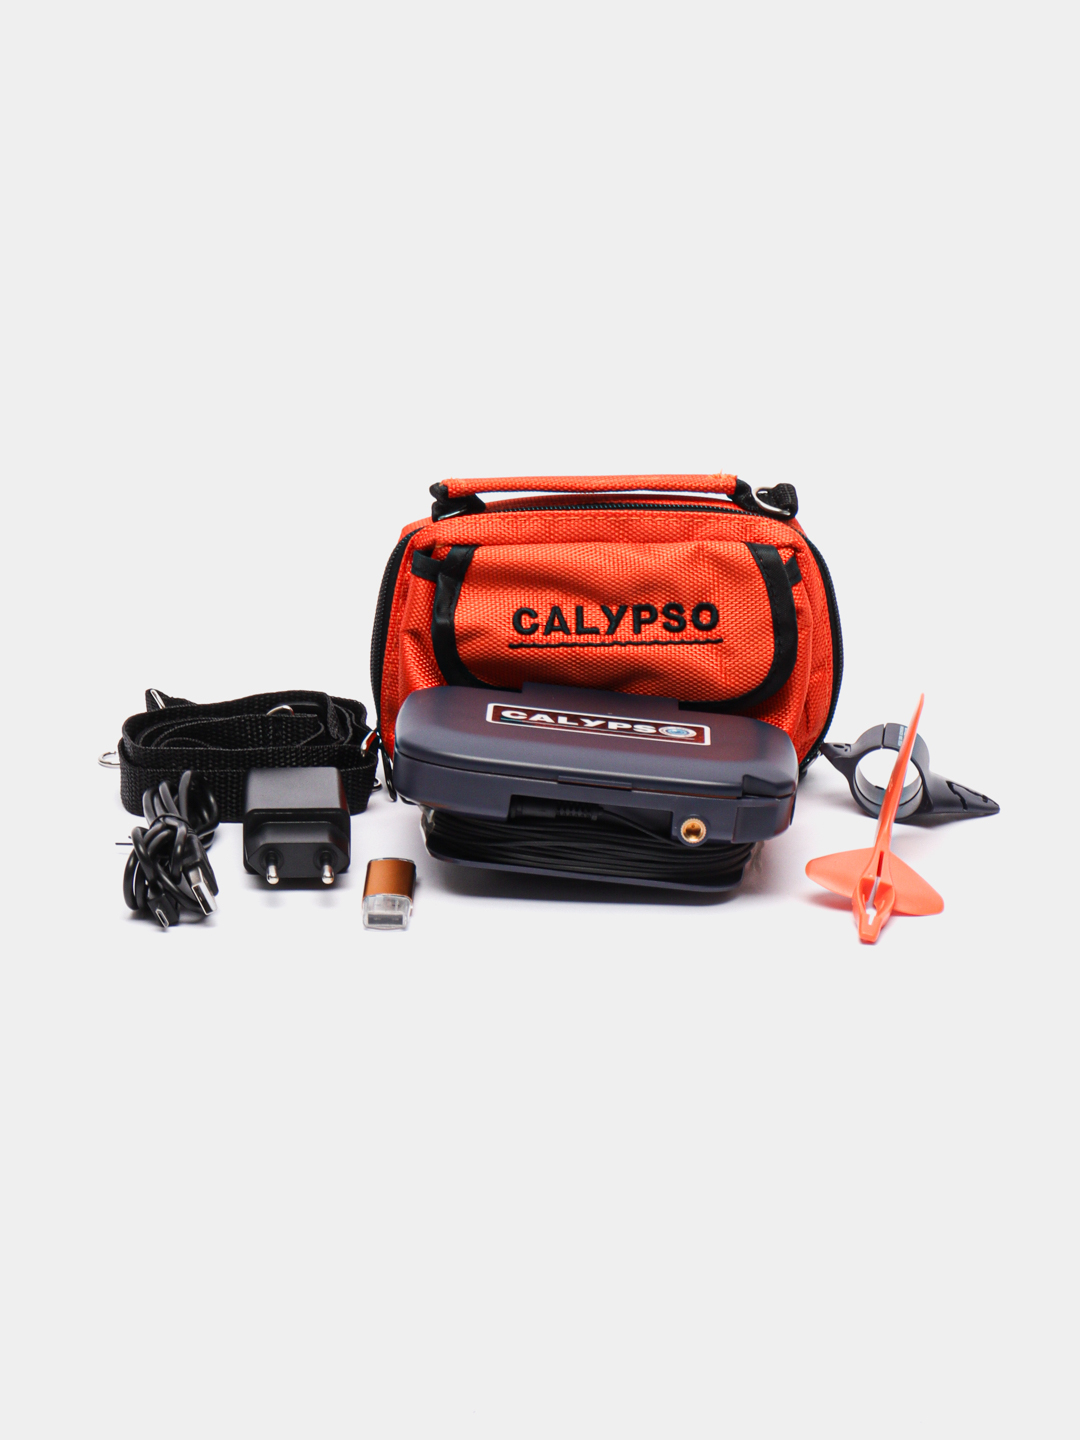 Подводная камера Calypso UVS 03 Plus: обзор, характеристики